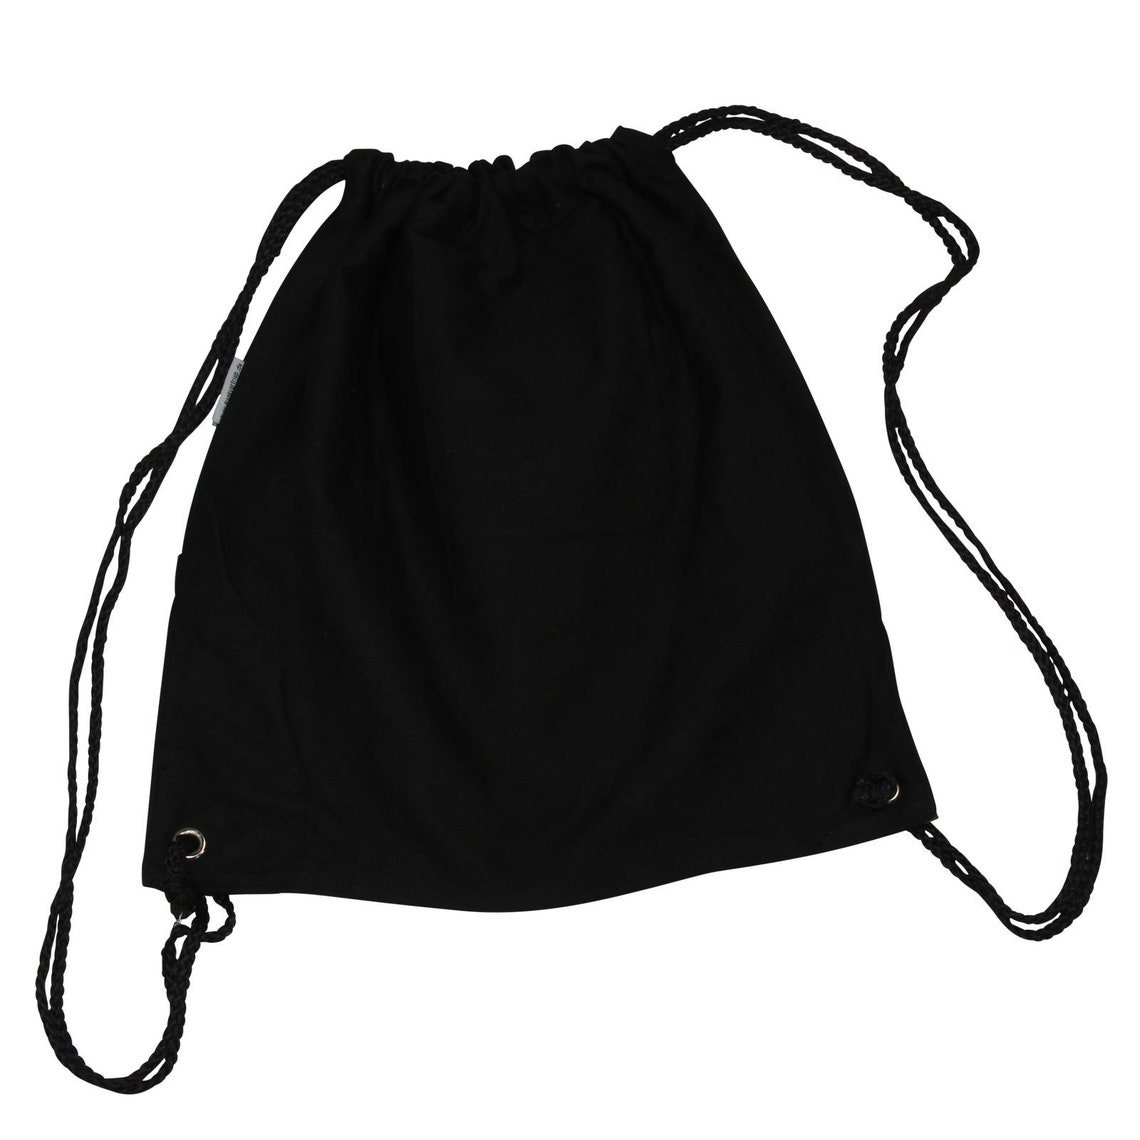 Gym Bag Backpack Sports Bag Gym Sack Bag Black Woven - Etsy UK